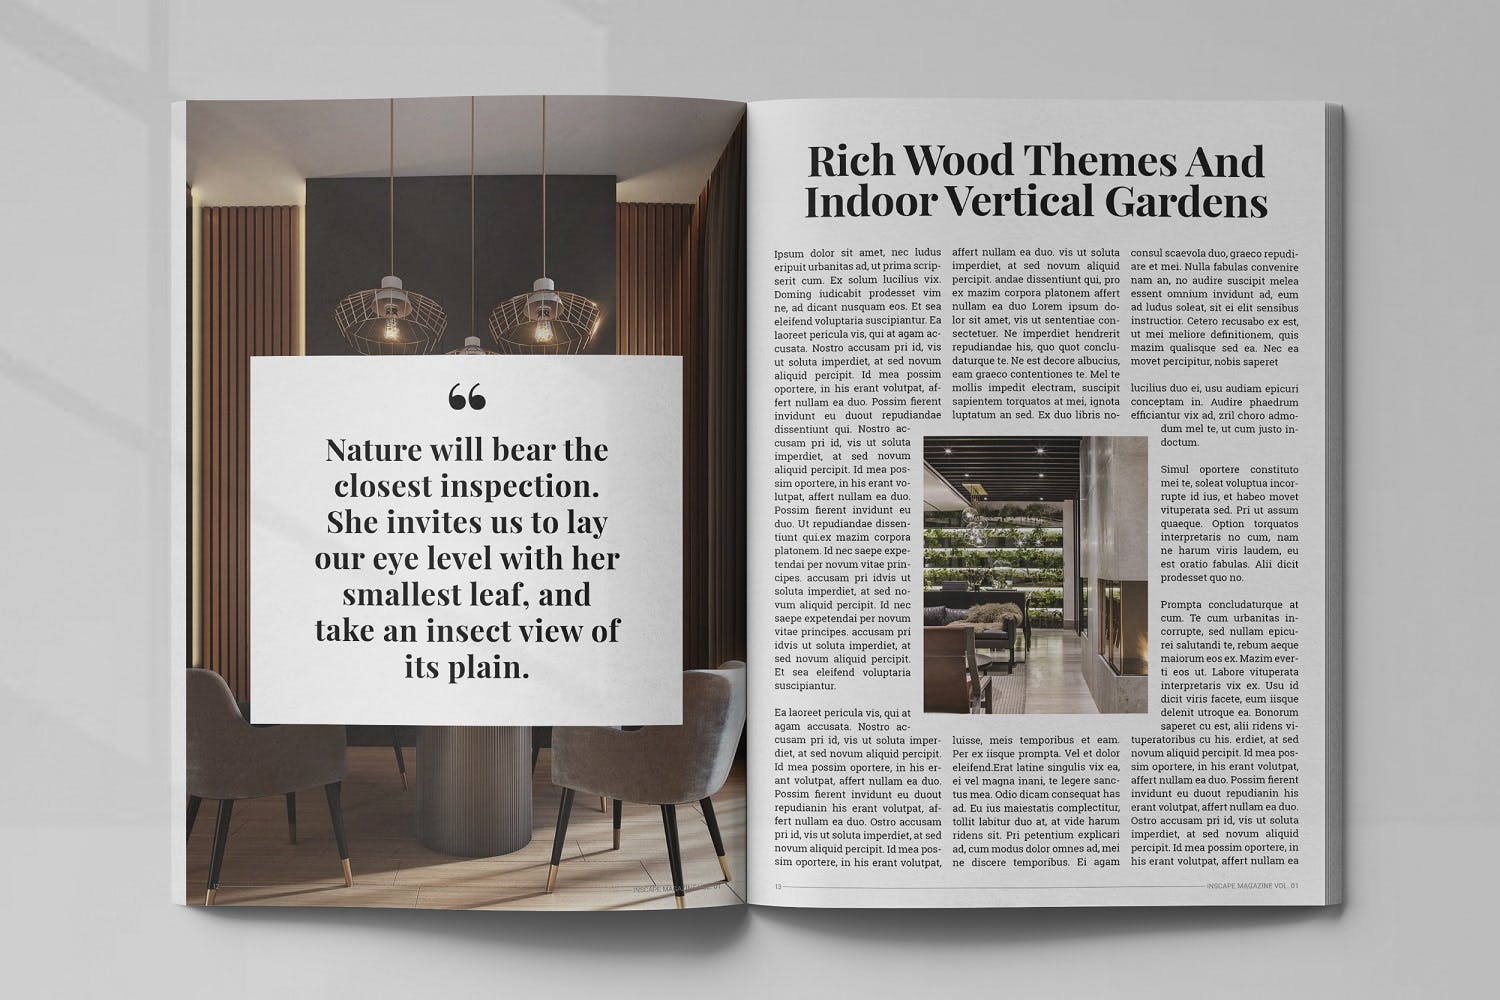 室内设计主题第一素材精选杂志排版设计模板 Inscape Interior Magazine插图(6)